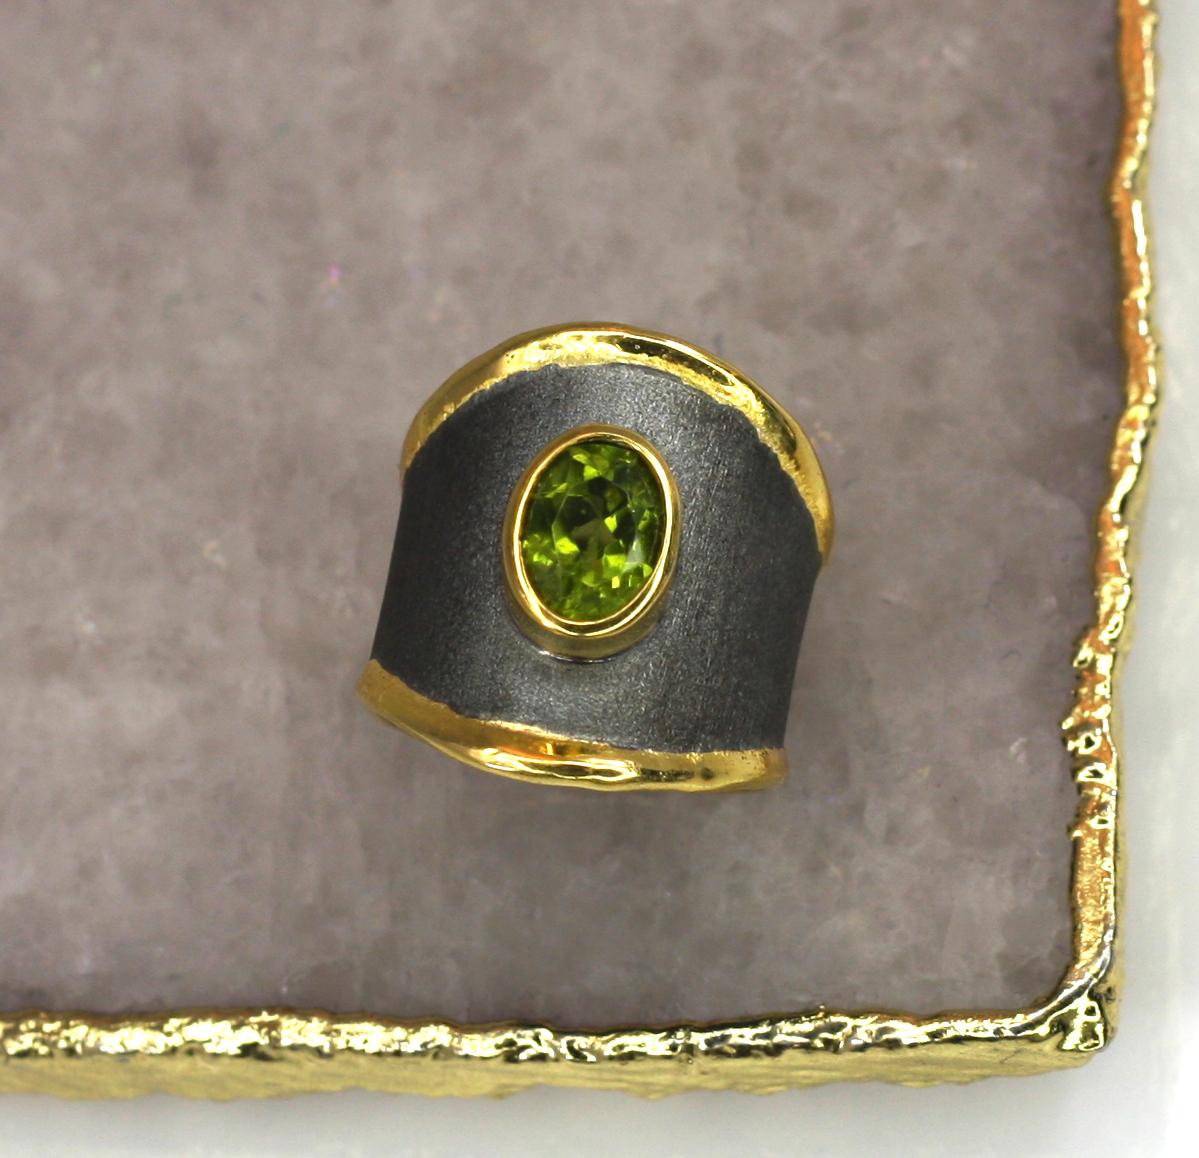 Dieser breite Ring von Yianni Creation besteht aus Feinsilber mit 950er Reinheit und einer 24-karätigen Goldauflage von 3+ Mikron und wird in Griechenland handgefertigt. Dieser wunderschöne Ring ist mit schwarzem Rhodium überzogen und mit einem